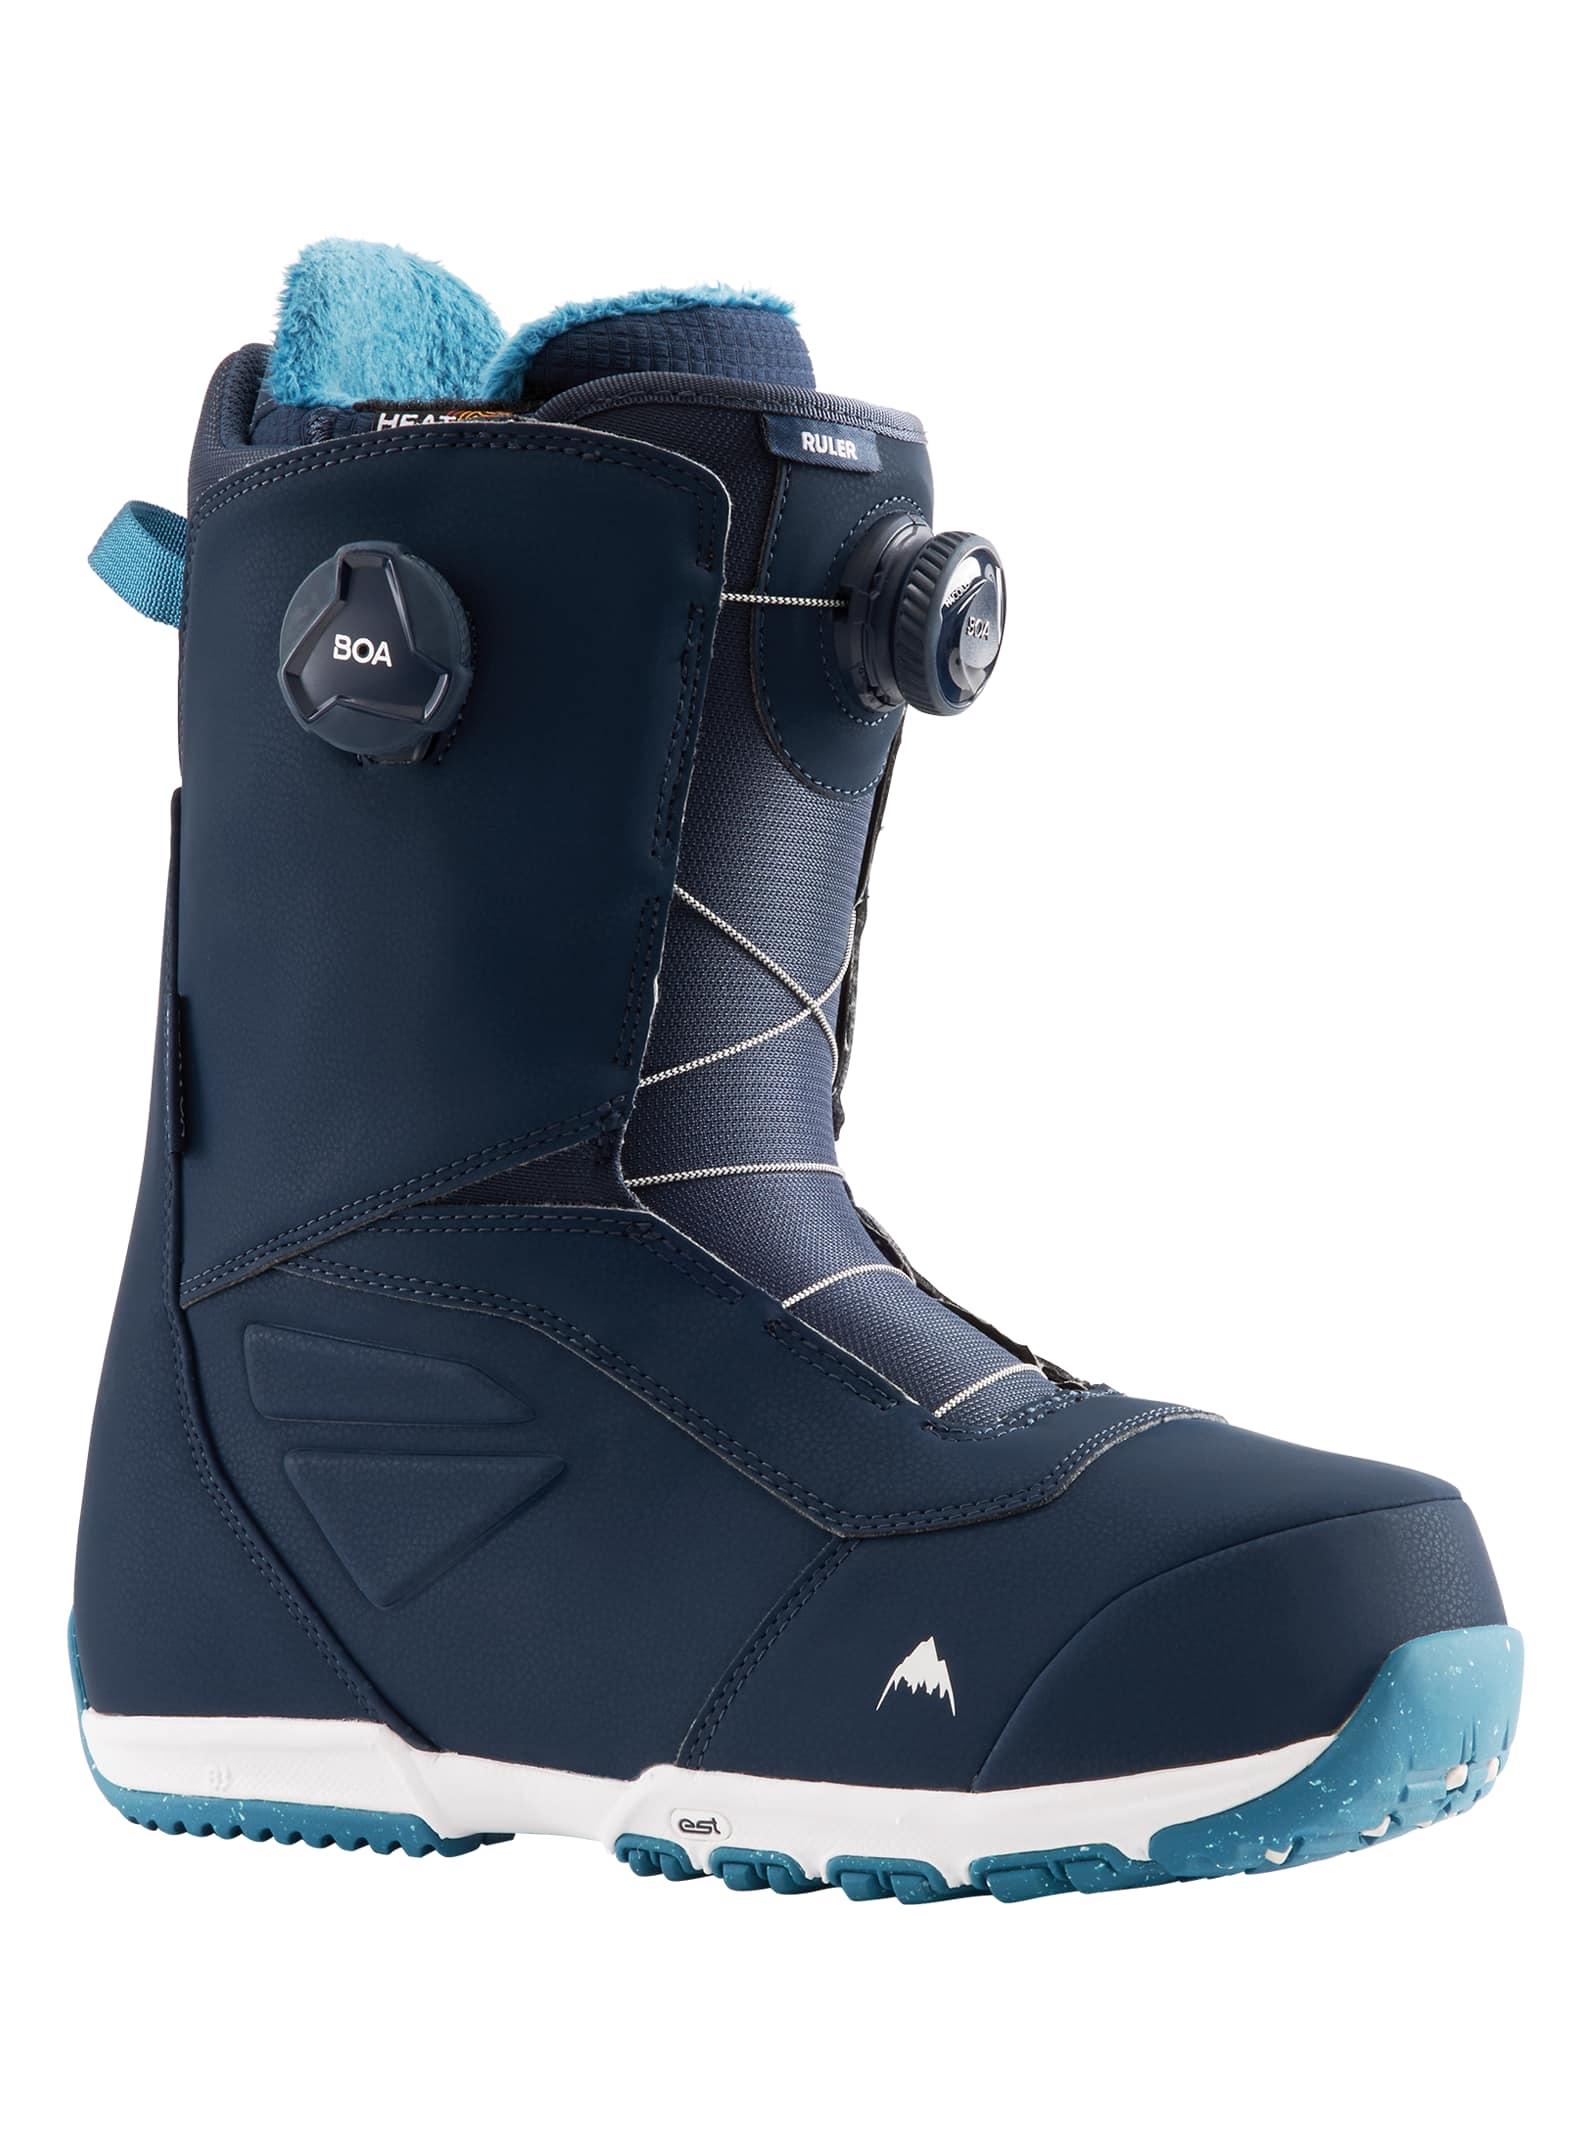 Men's Burton Ruler BOA® Snowboard Boots | Burton.com Winter 2022 HU